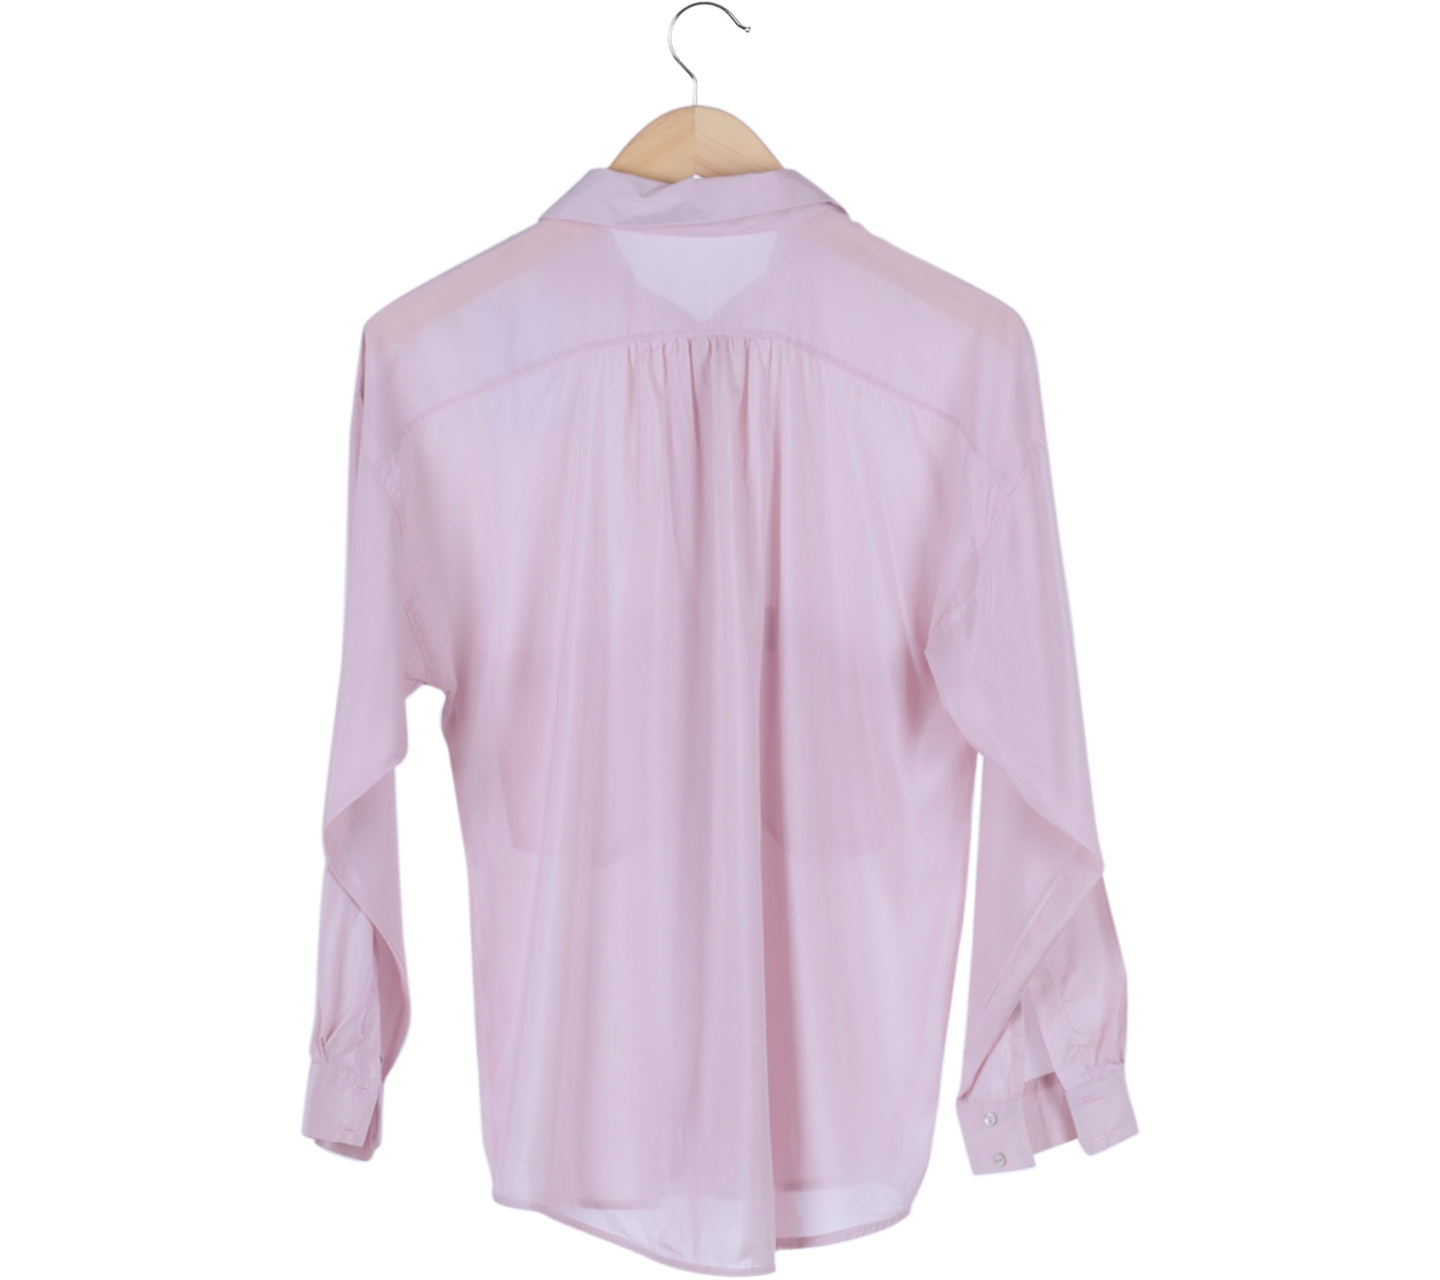 Zara Pink Pocket Shirt